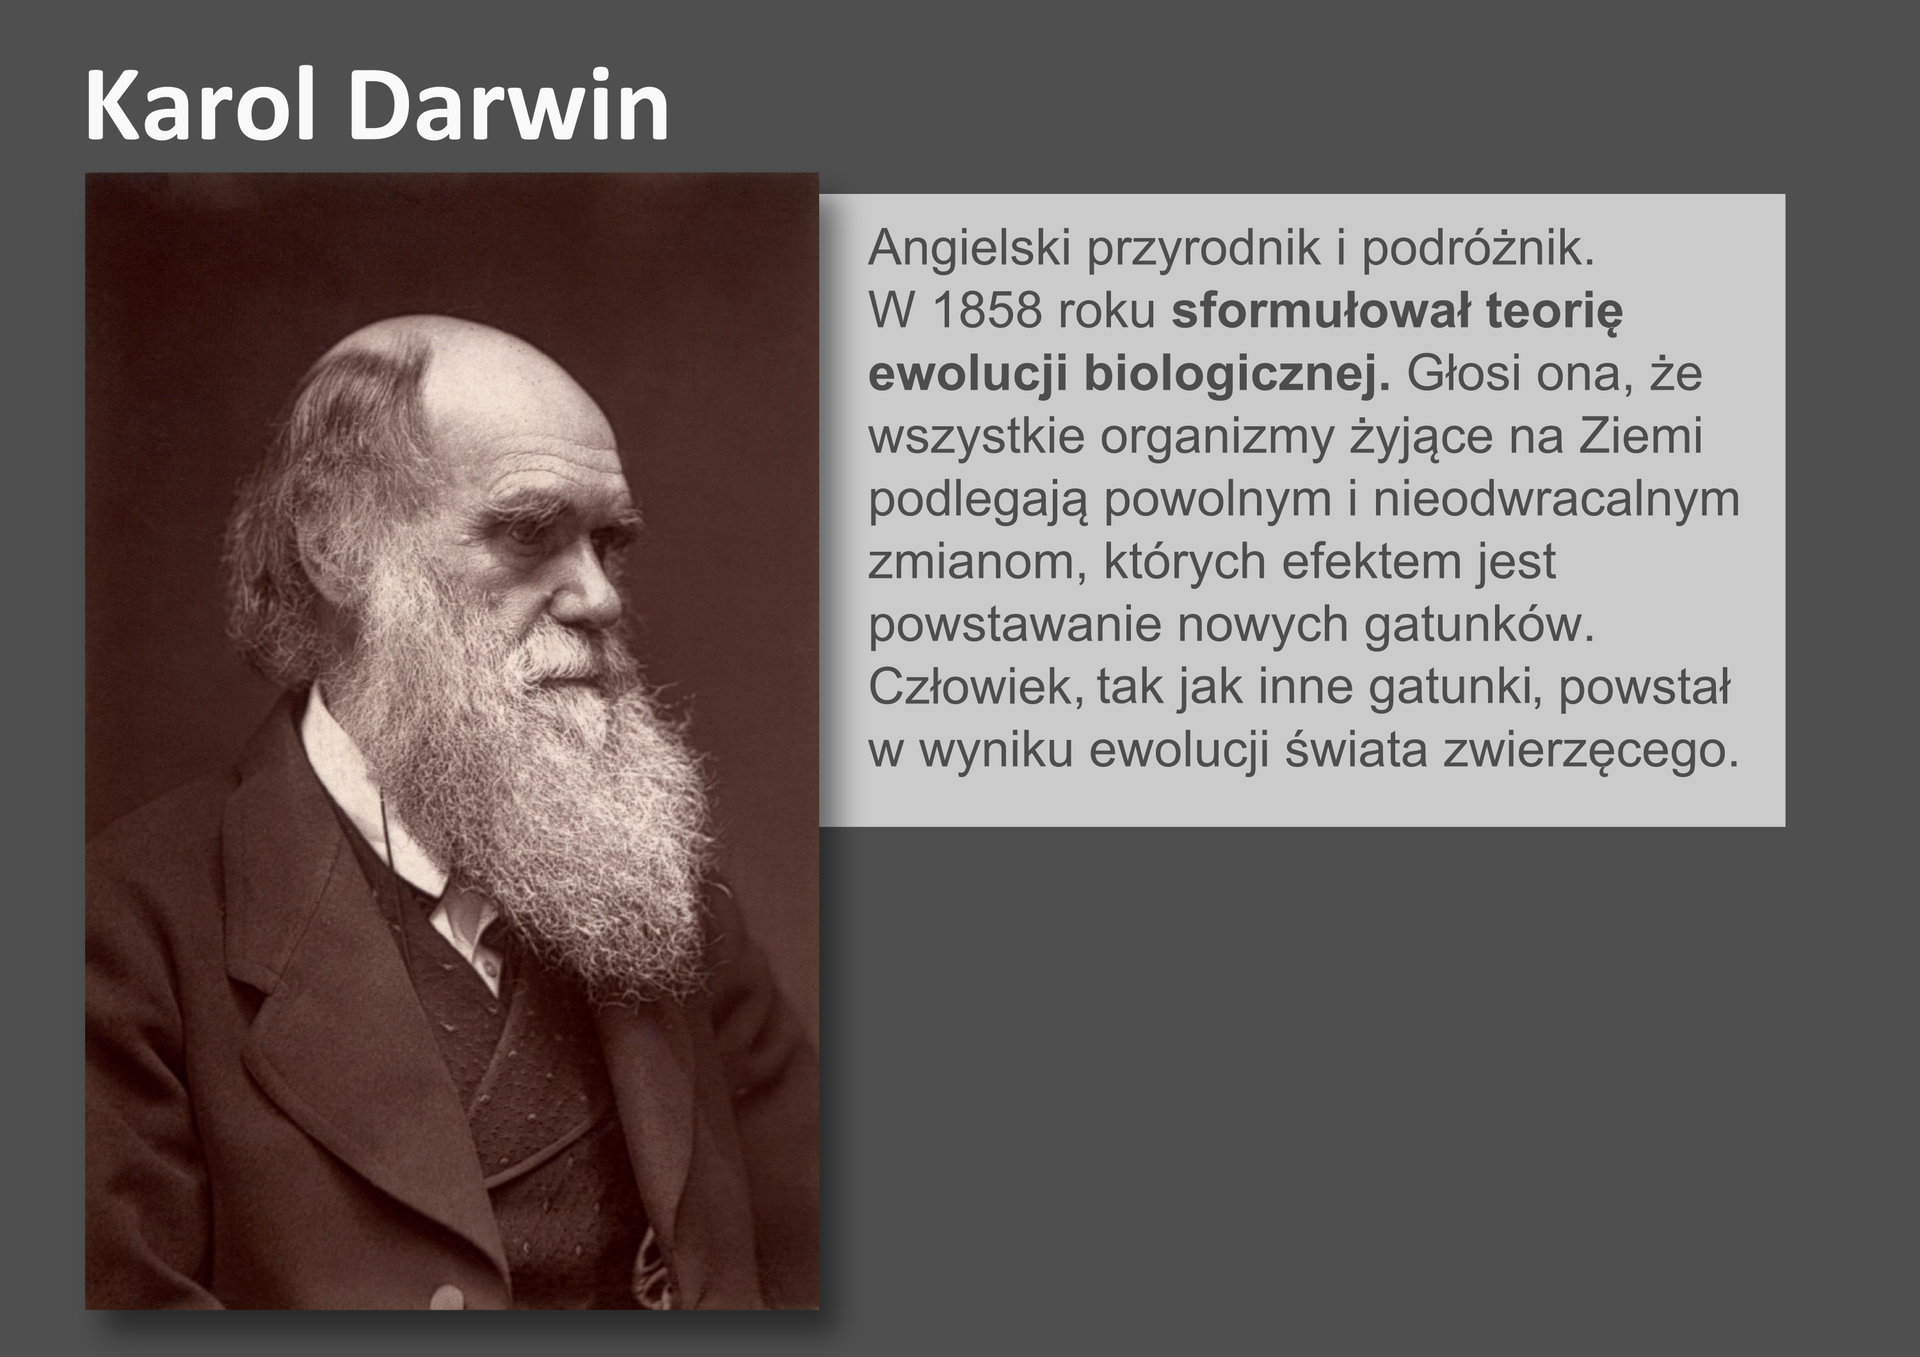 Galeria przedstawia pionierów nauk przyrodniczych. Składa się z dziewięciu slajdów w postaci ilustracji i umieszczonego obok opisu. Ilustracje pojawiają się kolejno, kiedy klika się w strzałki, znajdujące się po prawej i lewej stronie ilustracji. Szósty slajd przedstawia czarno – białą fotografię Karola Darwina, angielskiego przyrodnika z dziewiętnastego wieku. Darwin ubrany jest w surdut, kamizelkę i białą koszulę. Na tym zdjęciu ma łysinę, resztki siwych włosów i długą, siwą brodę. W 1858 roku Darwin ogłosił teorię ewolucji biologicznej, w której znalazł się pogląd, że człowiek tak jak inne gatunki powstał w drodze ewolucji świata zwierzęcego.